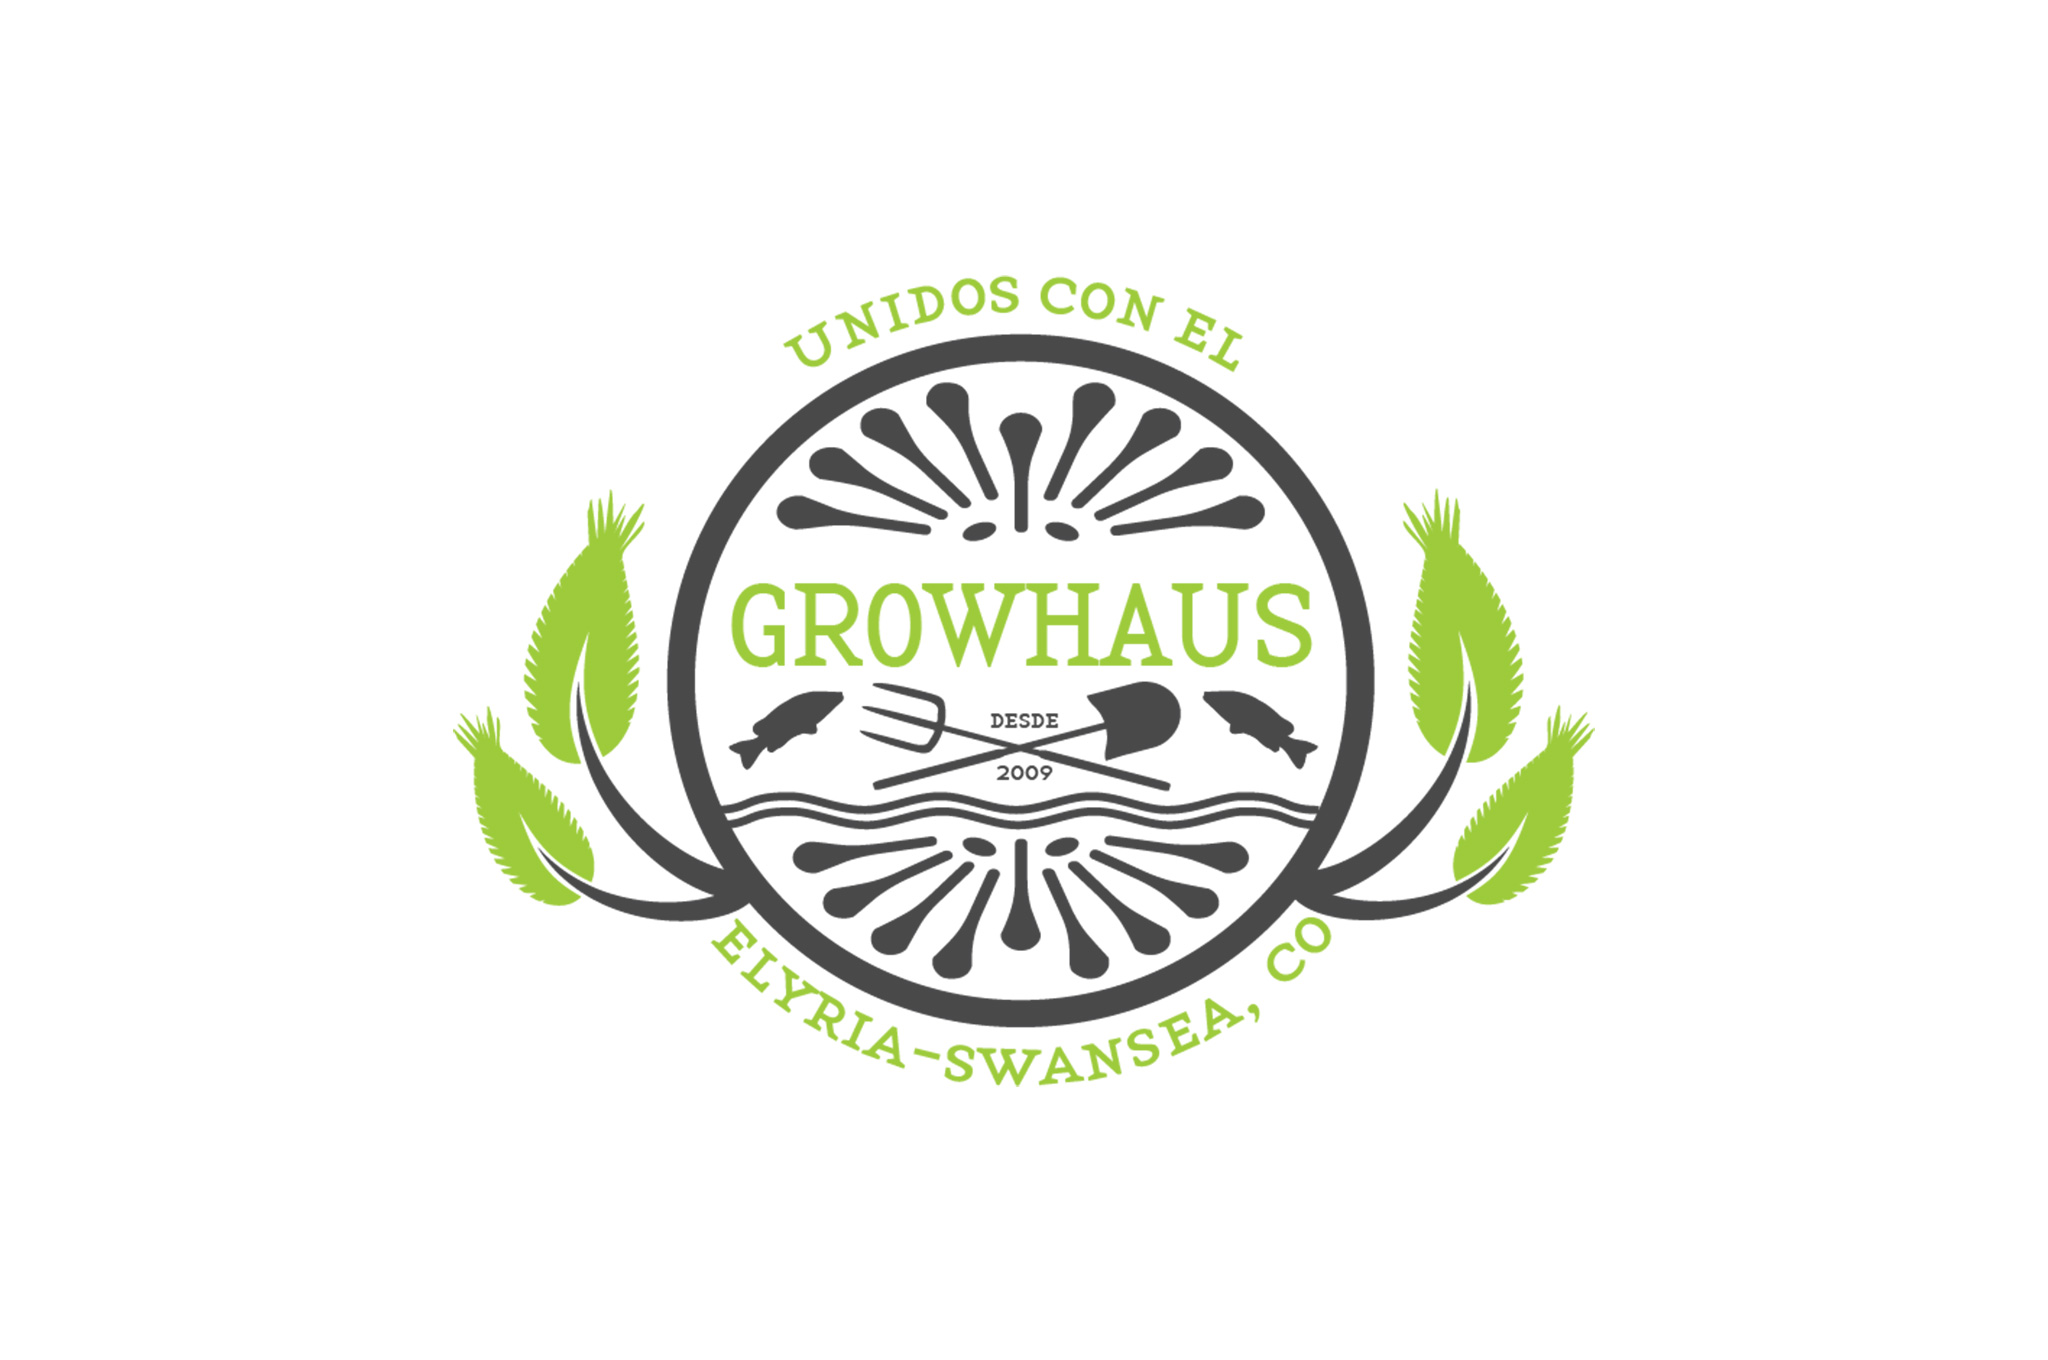 Growhaus logo